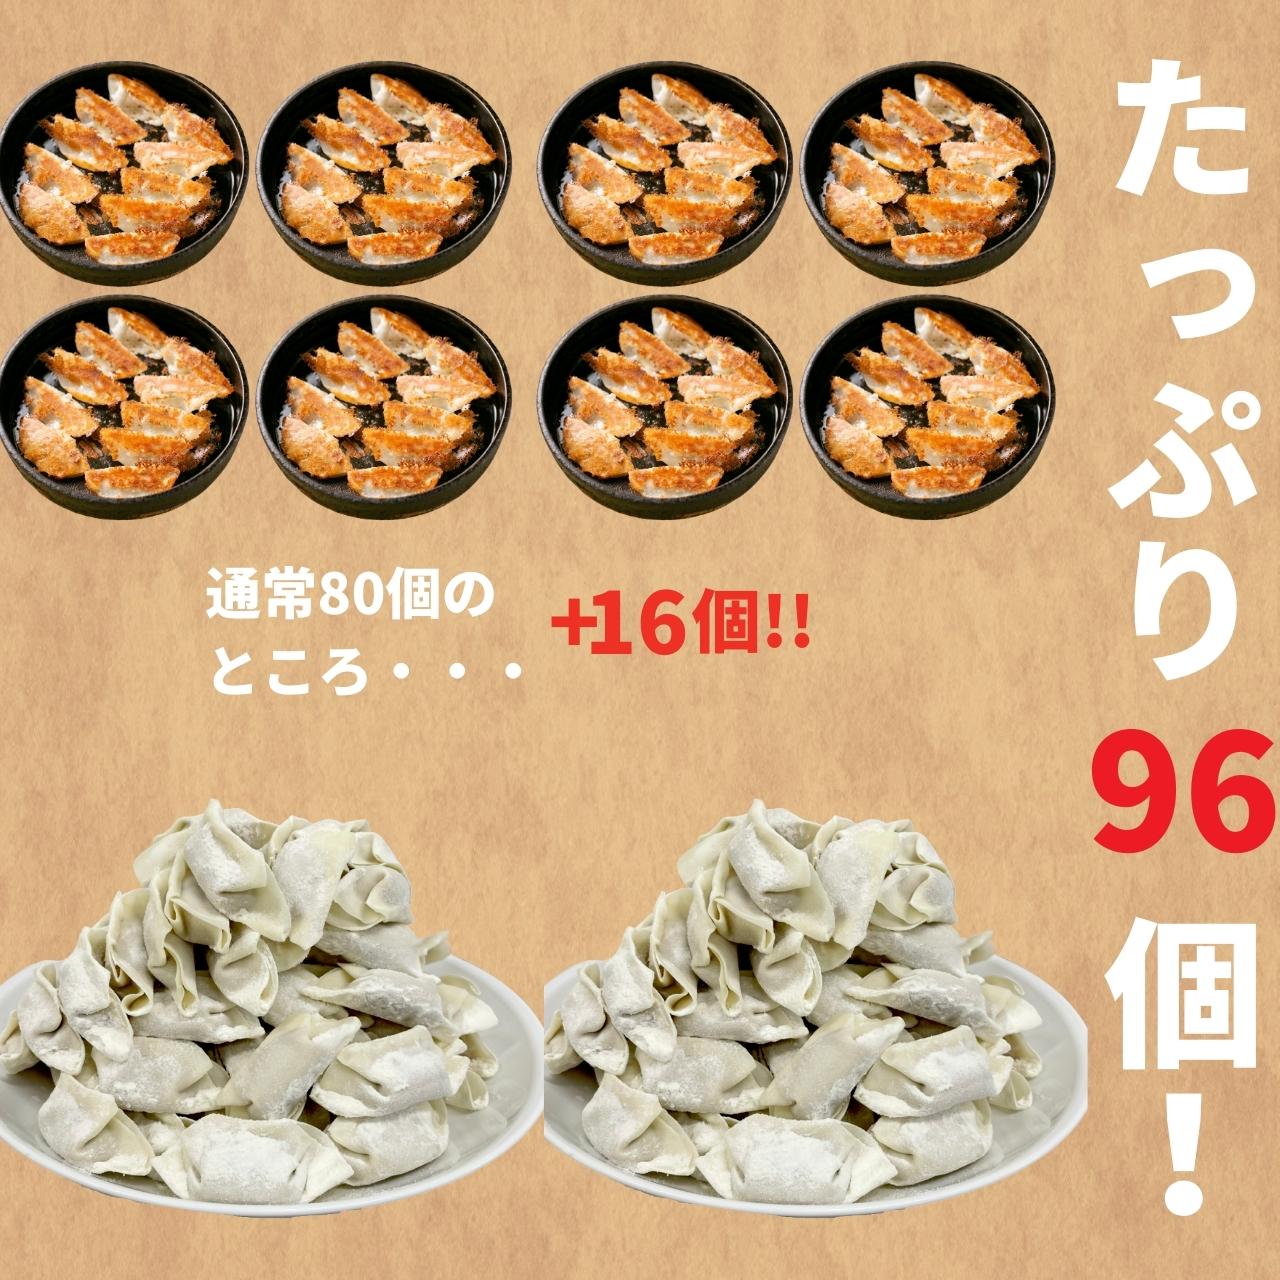 本店鉄なべ餃子 96個入 | 冷凍ぎょうざ 北九州 本店 鉄なべ 一口 大容量 3